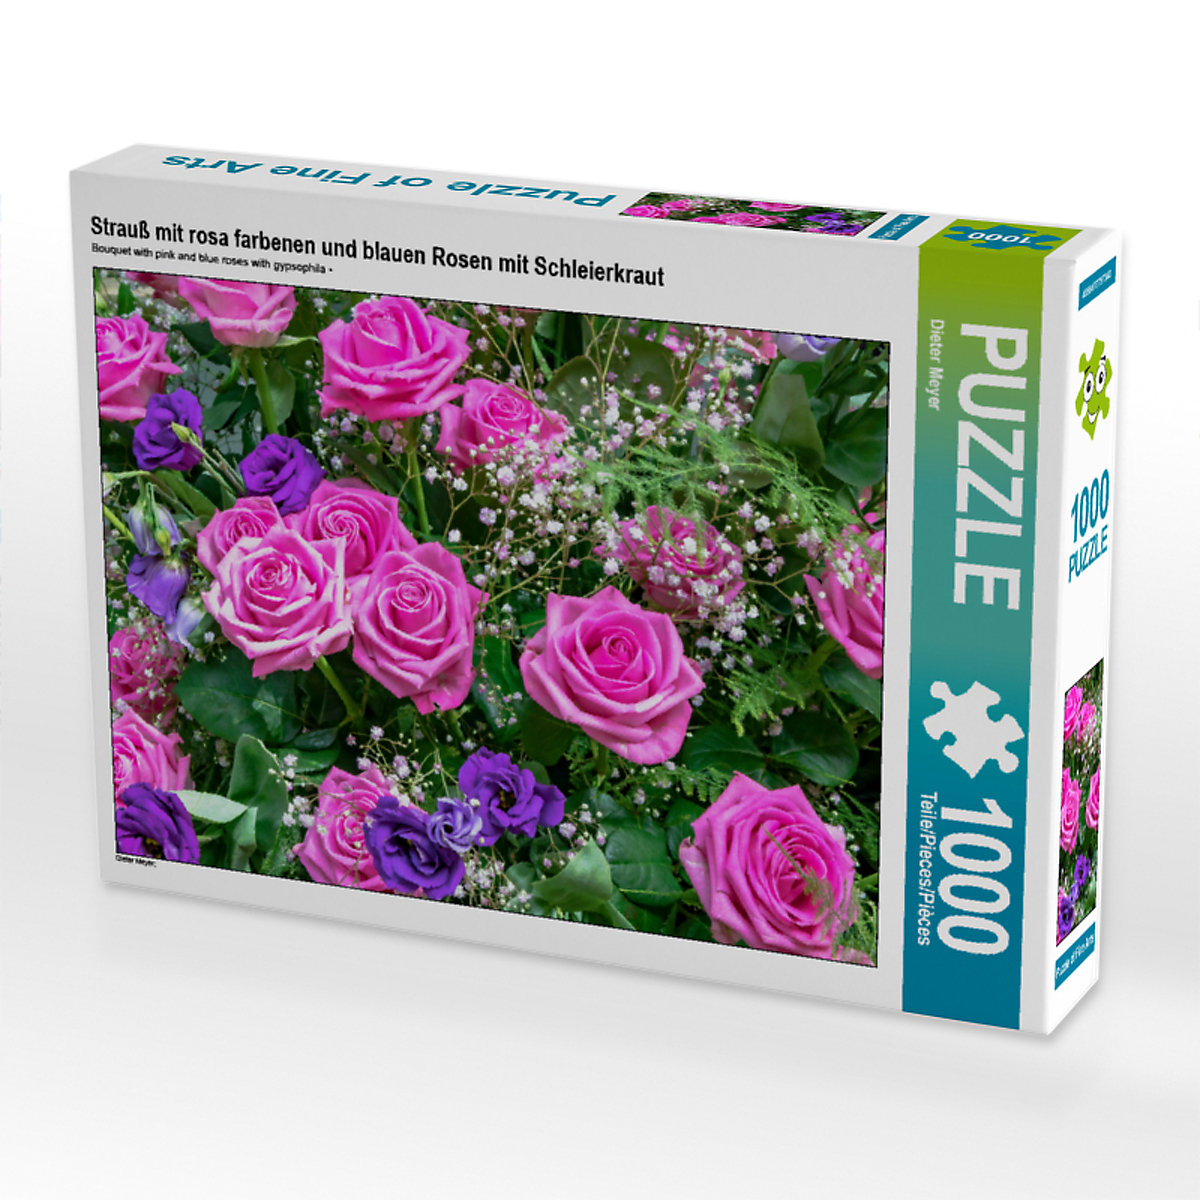 CALVENDO® Puzzle CALVENDO Puzzle Strauß mit rosa farbenen und blauen Rosen mit Schleierkraut 1000 Teile Foto-Puzzle für glückliche Stunden